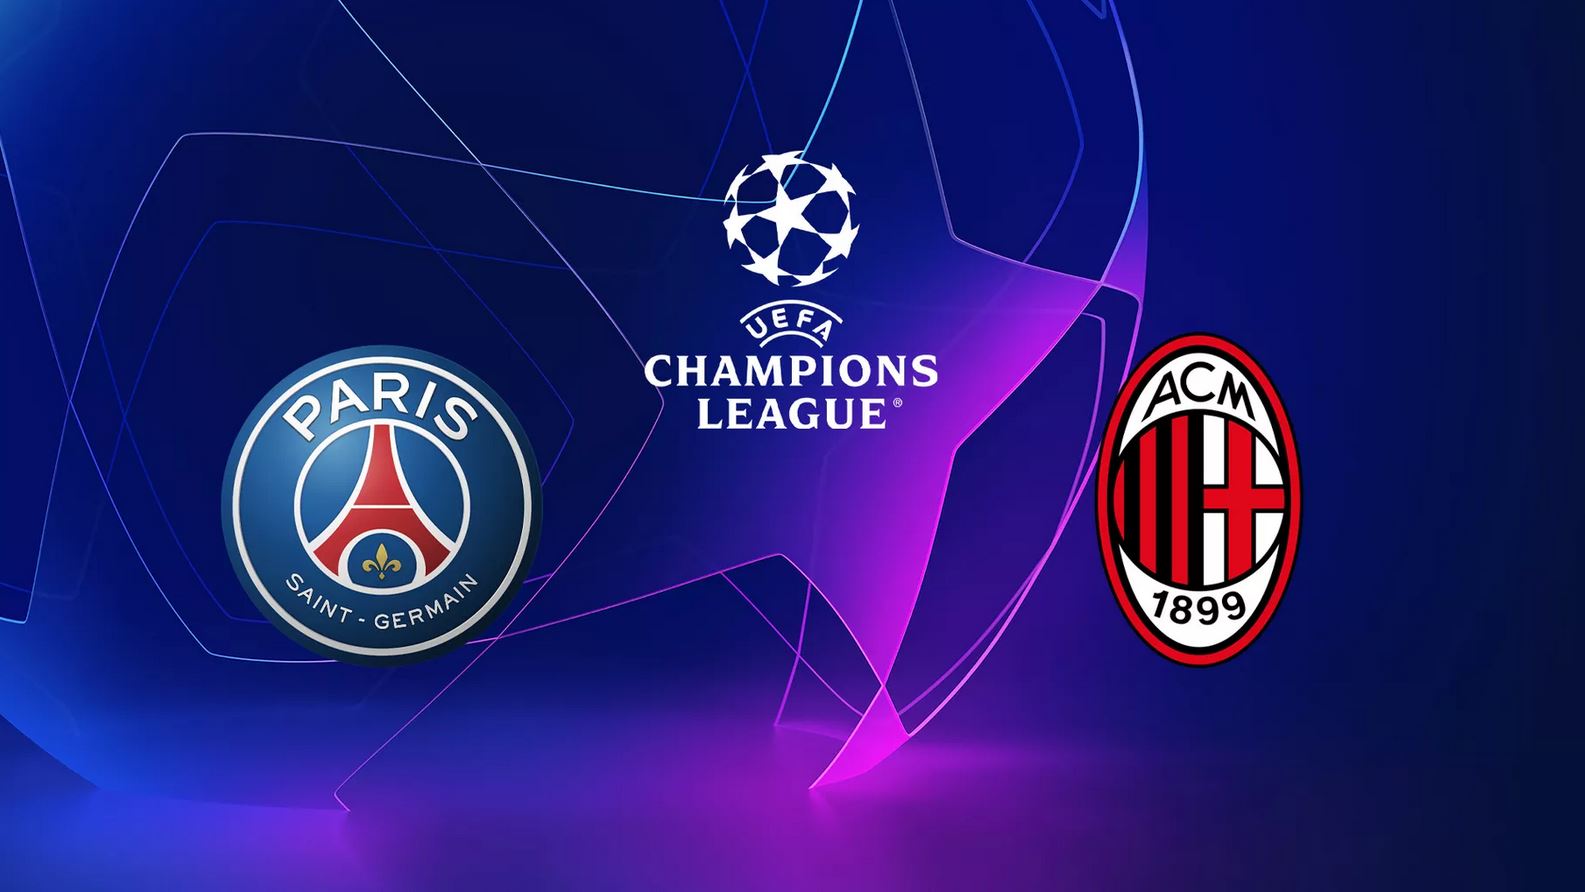 Paris SG / Milan AC (TV/Streaming) Sur quelles chaines et à quelle heure regarder le match de Champions League ?